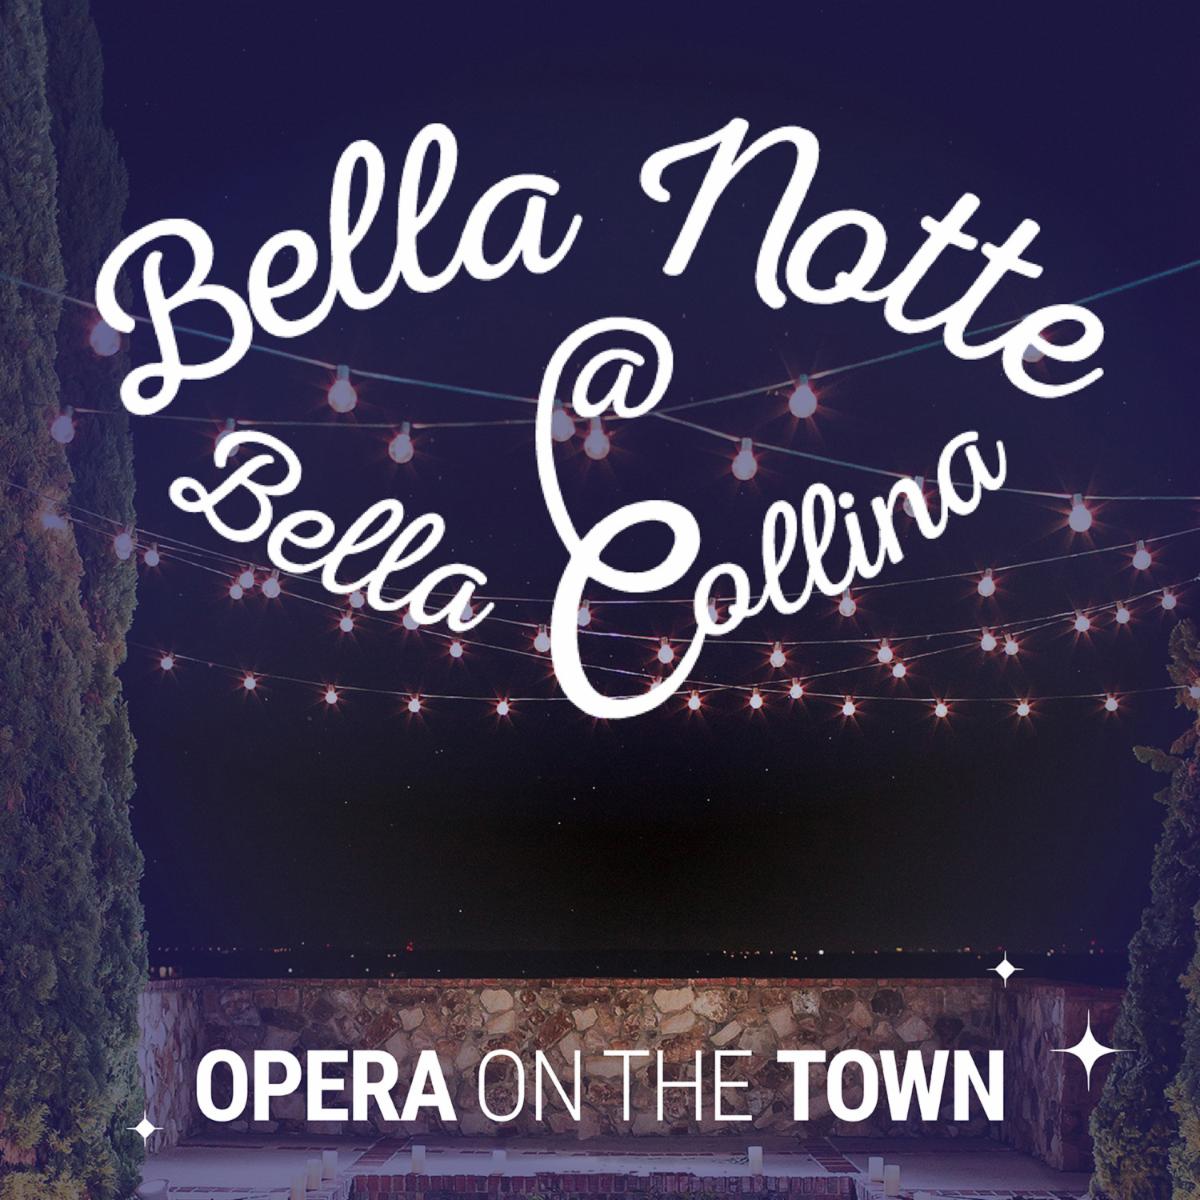 Bella Notte at Bella Collina | Mar 31 | Opera Orlando | Park Ave Magazine